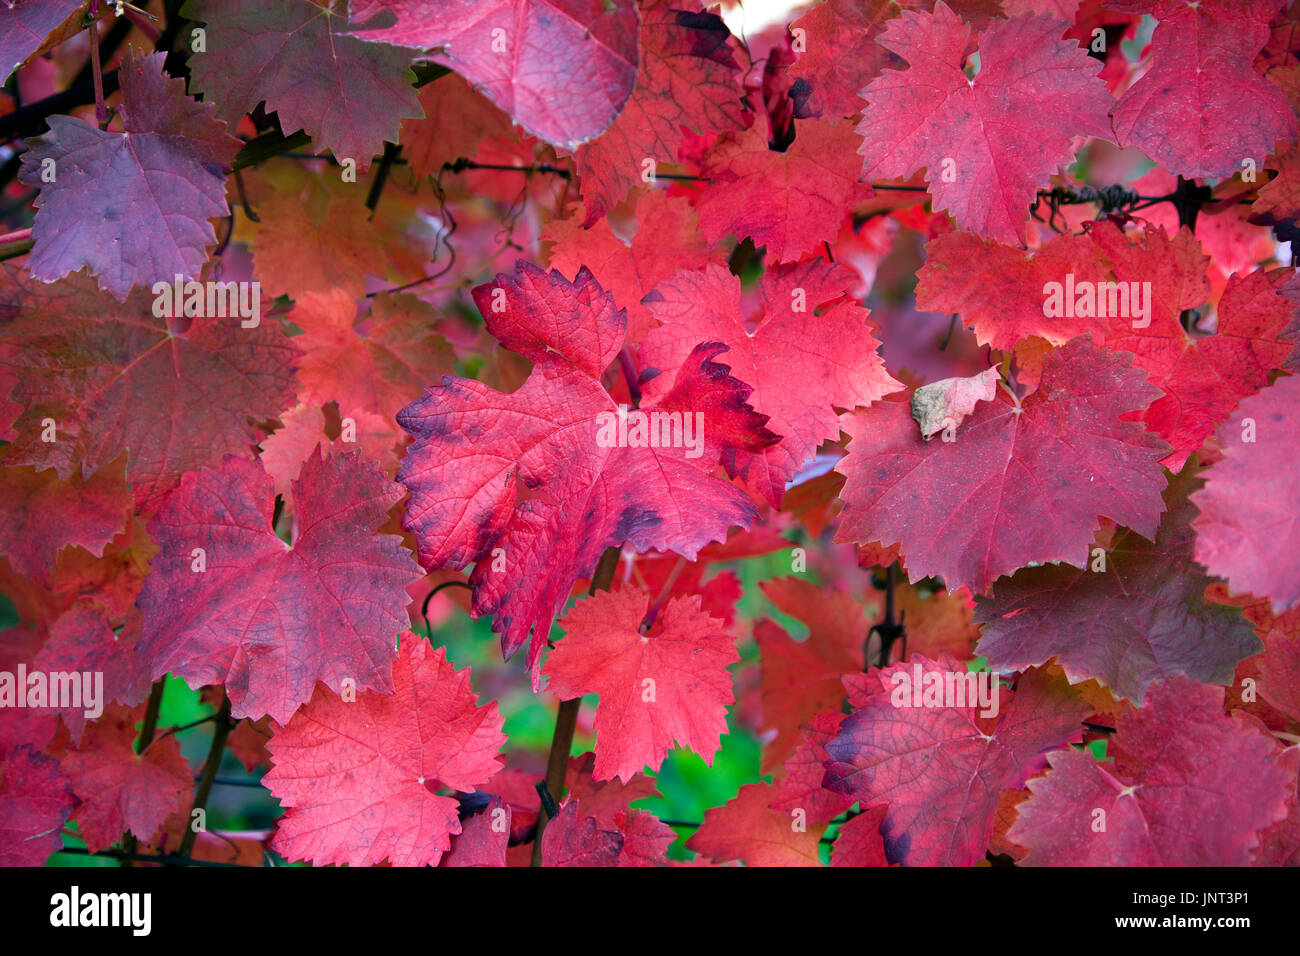 Herbstimpressionen, rot gefaerbte Weinblaetter, Schweich, Mittelmosel Renania-Palatinato, Deutschland, Europa | Impressioni autunno, colorato di rosso vino le Foto Stock